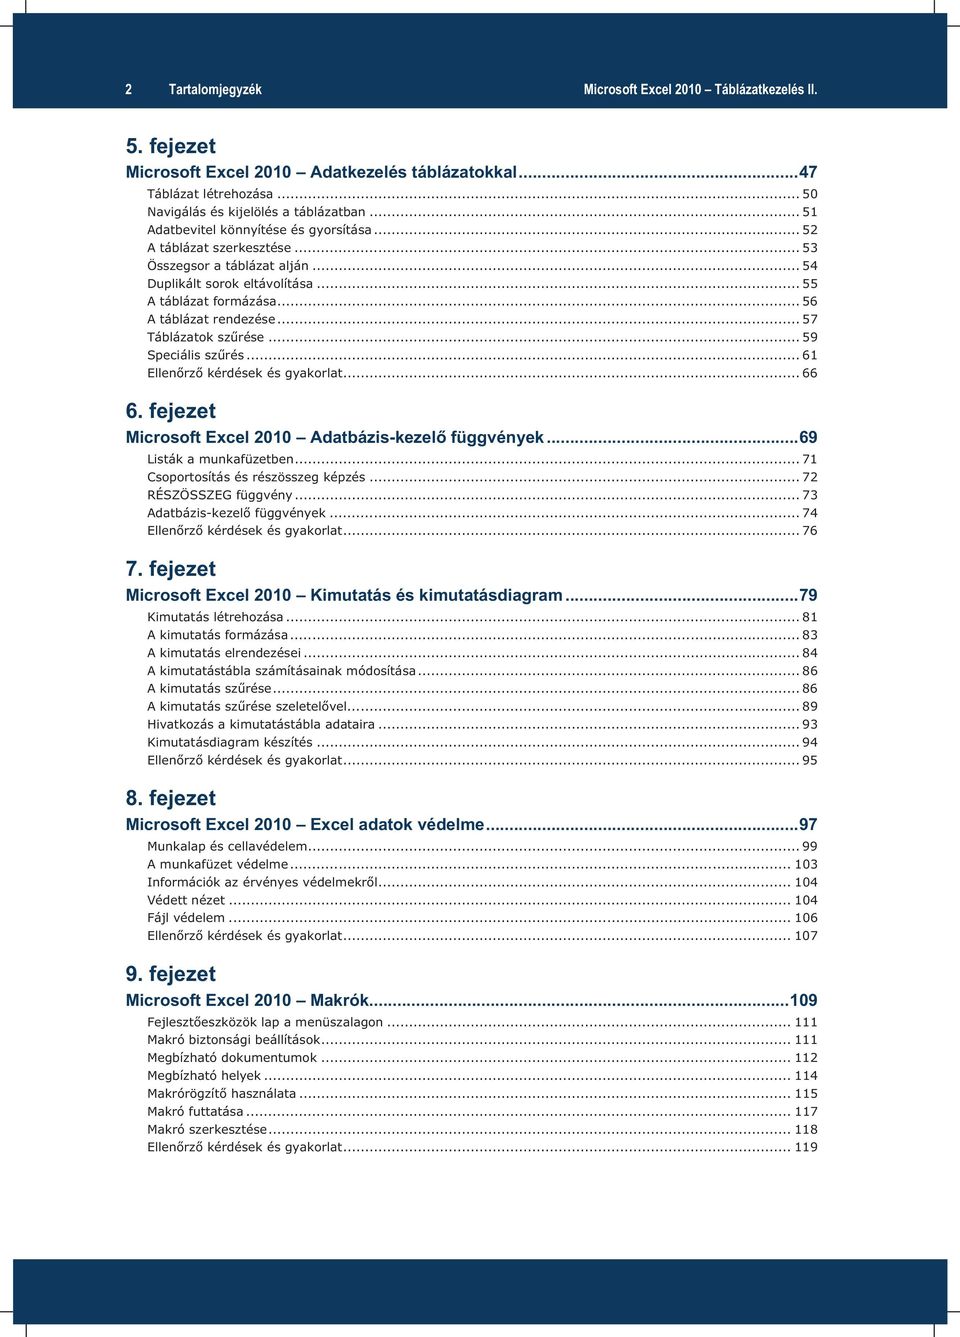 .. 57 Táblázatok szűrése... 59 Speciális szűrés... 61 Ellenőrző kérdések és gyakorlat... 66 6. fejezet Microsoft Excel 2010 Adatbázis-kezelő függvények... 69 Listák a munkafüzetben.